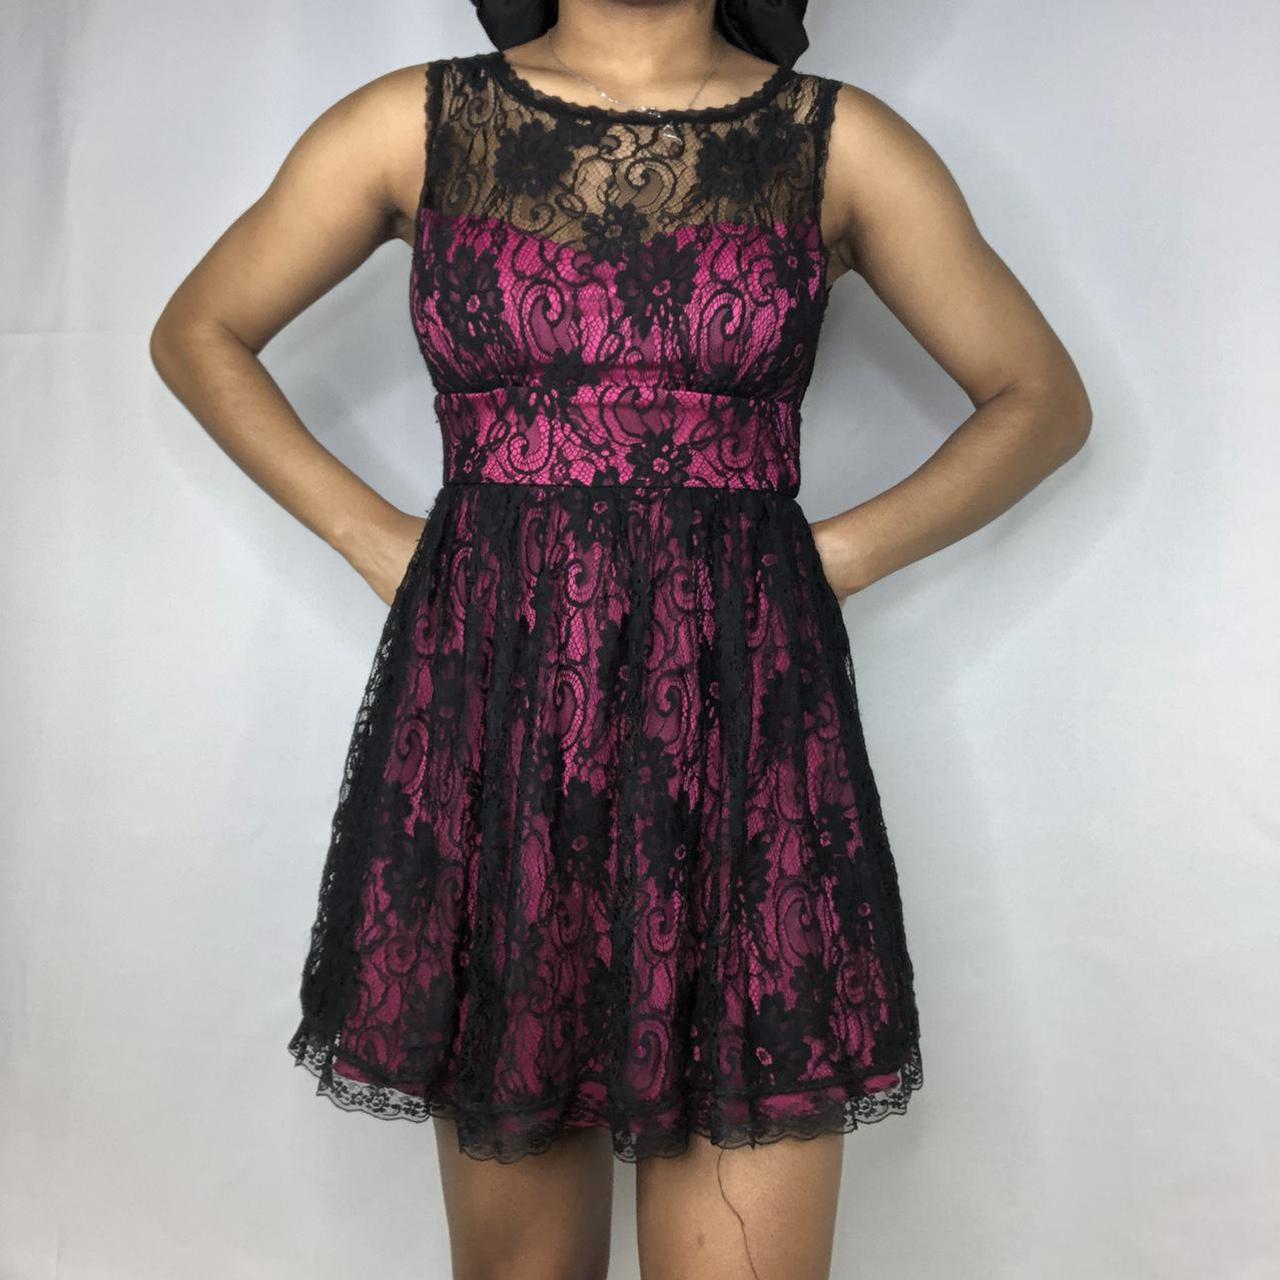 Product Image 3 - Black lace dress

Pink underlay sleeveless